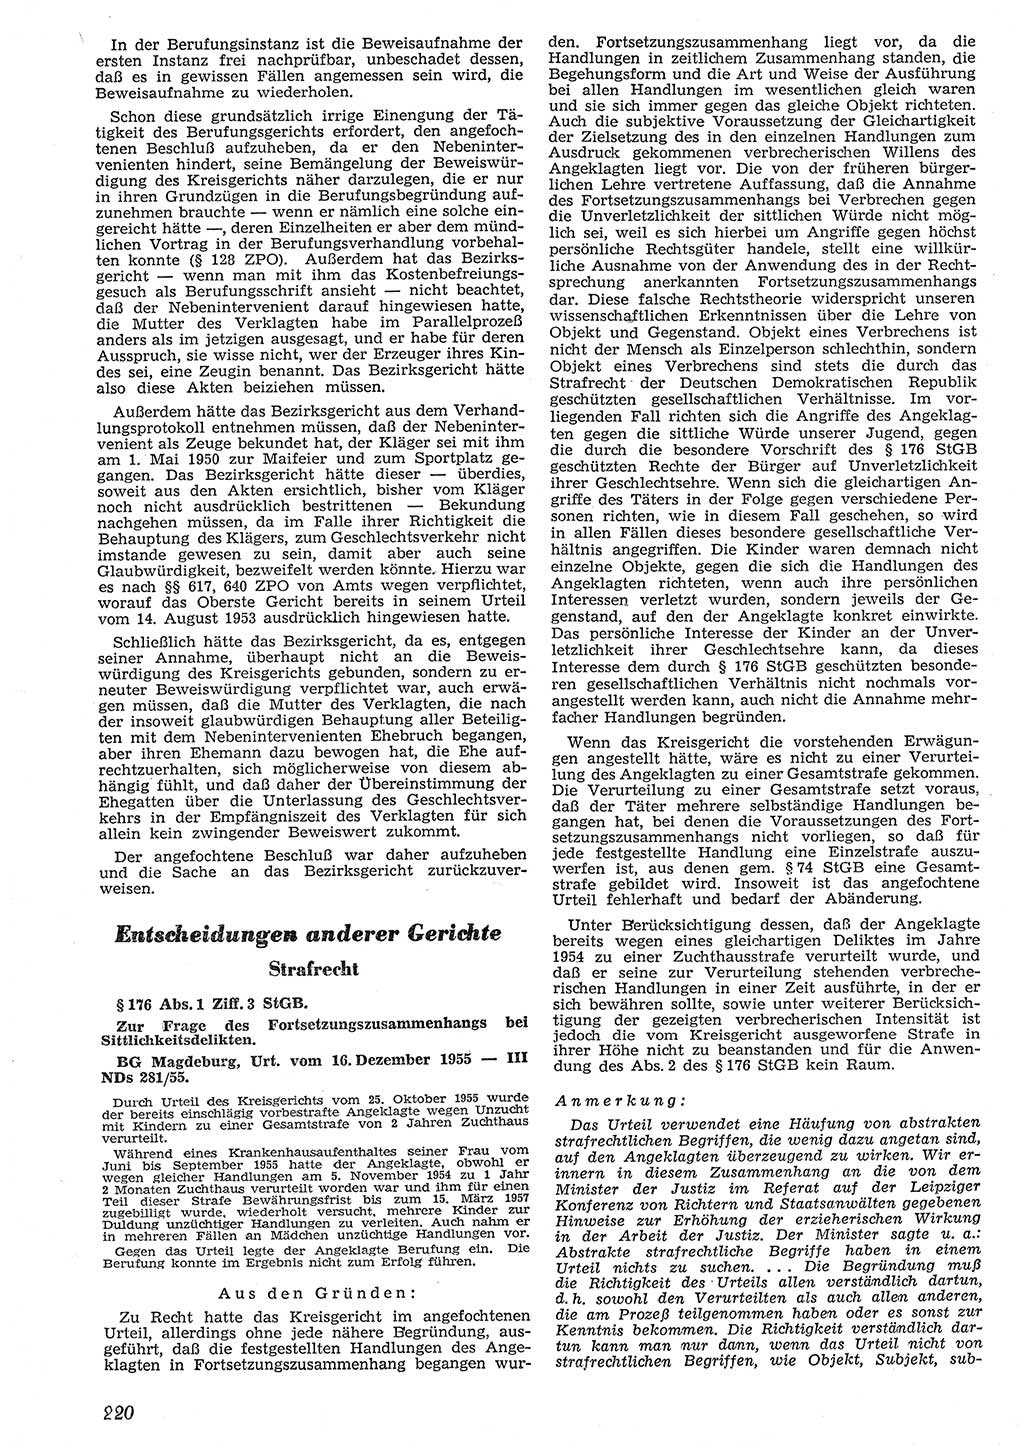 Neue Justiz (NJ), Zeitschrift für Recht und Rechtswissenschaft [Deutsche Demokratische Republik (DDR)], 10. Jahrgang 1956, Seite 220 (NJ DDR 1956, S. 220)